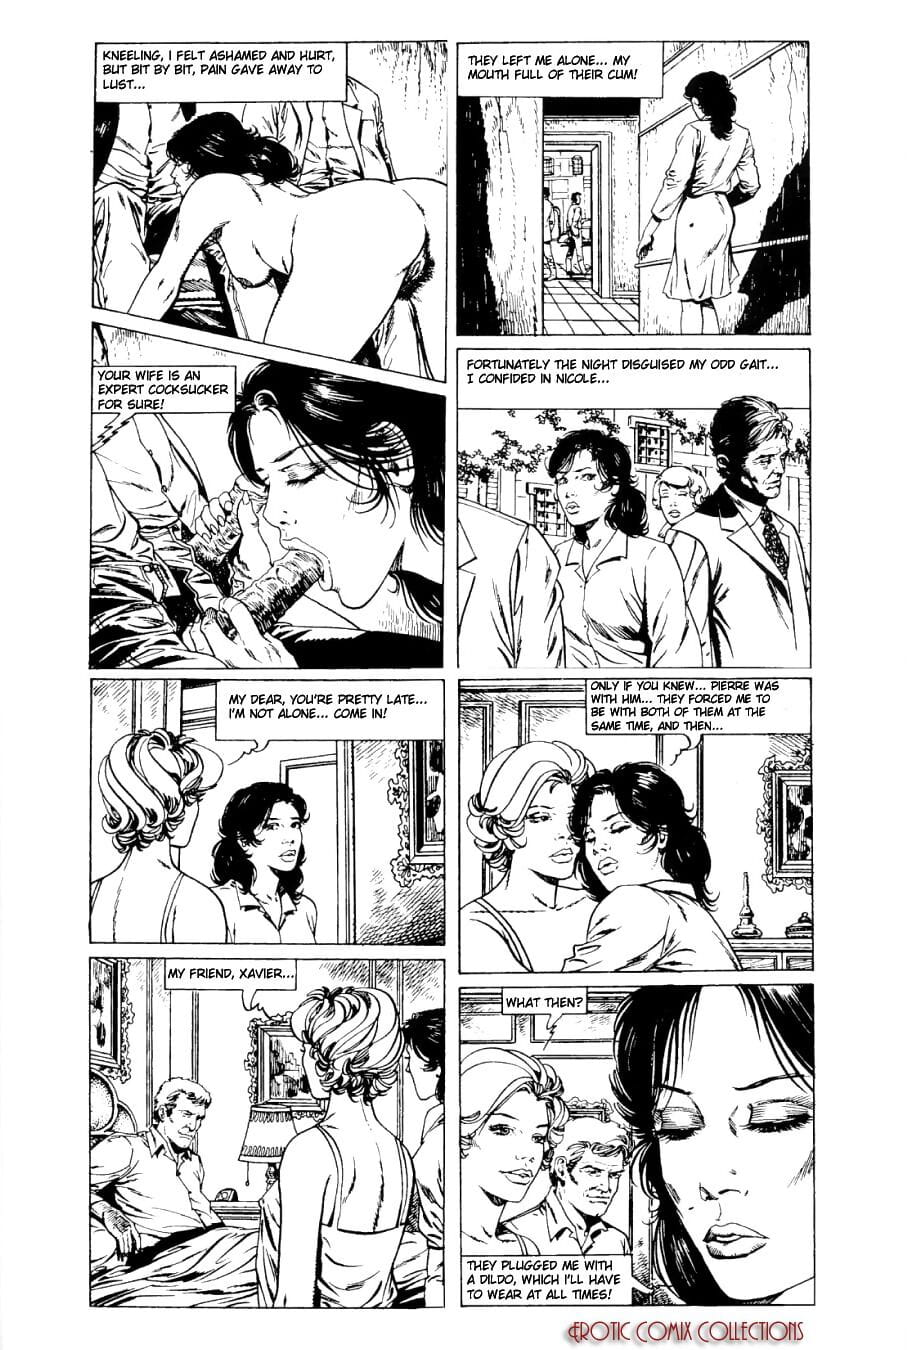 Maud page 1